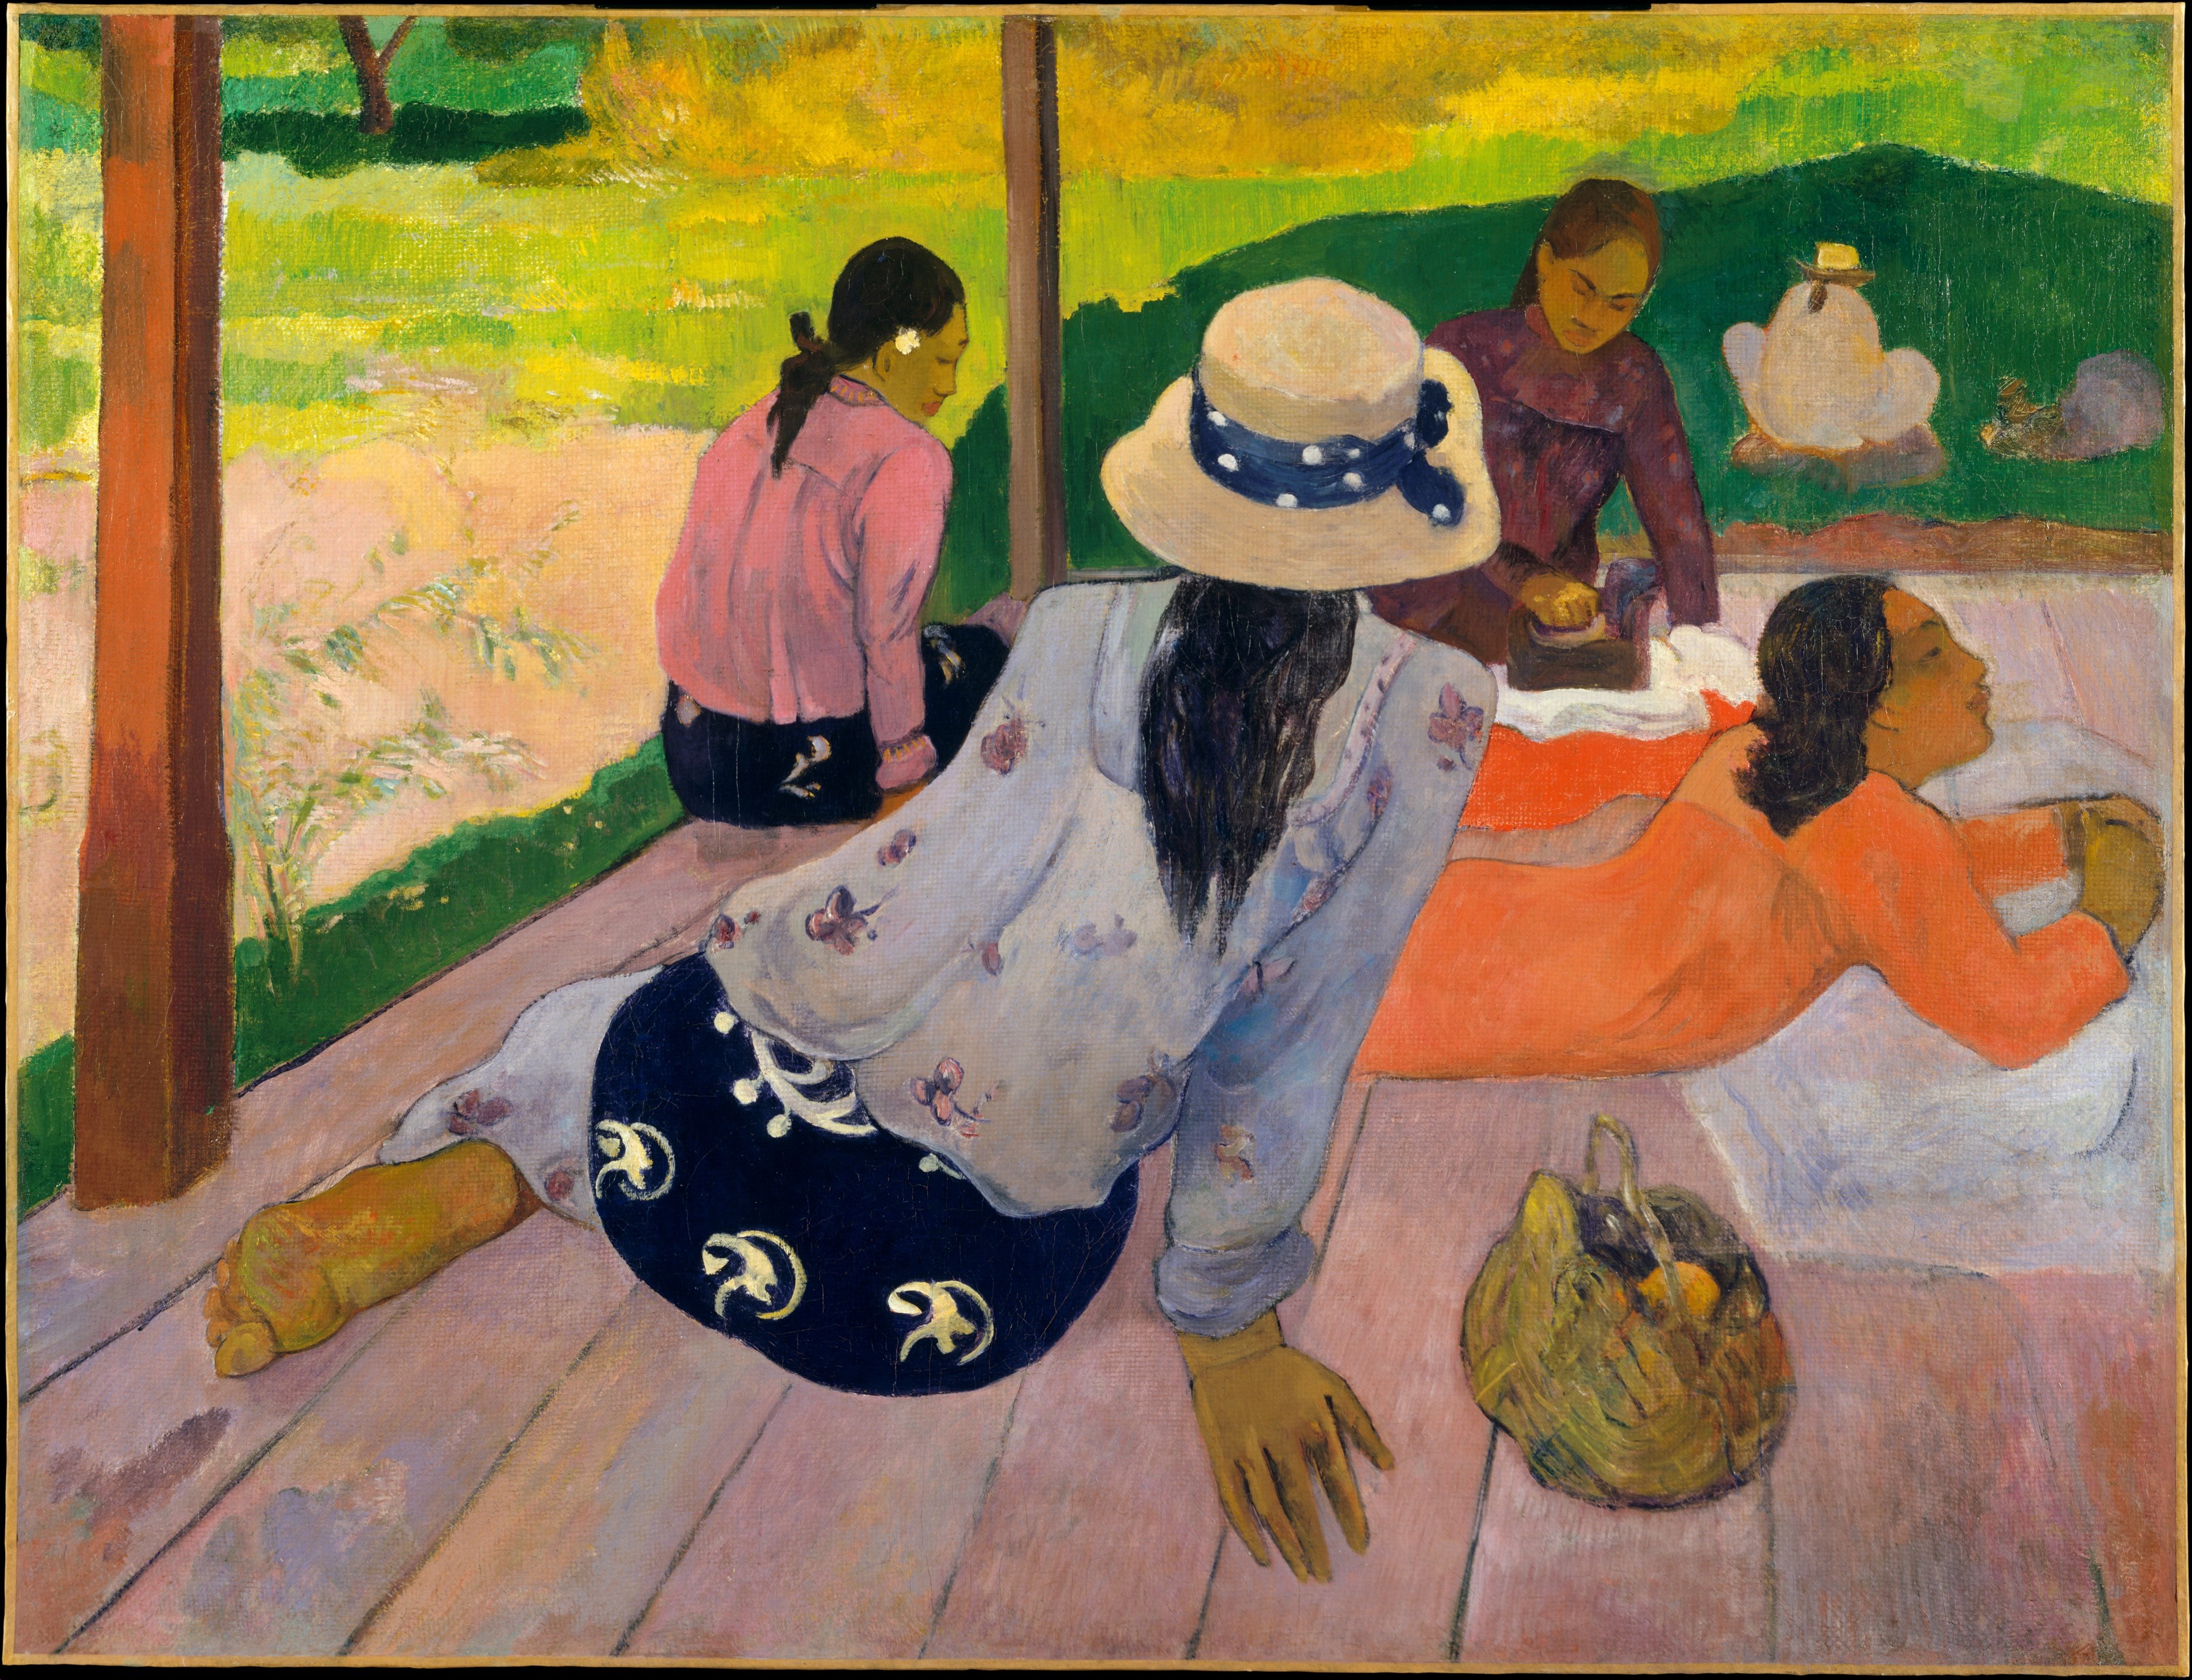 Die Siesta by Paul Gauguin - ca. 1892–94 - 88.9 x 116.2 cm Metropolitan Museum of Art